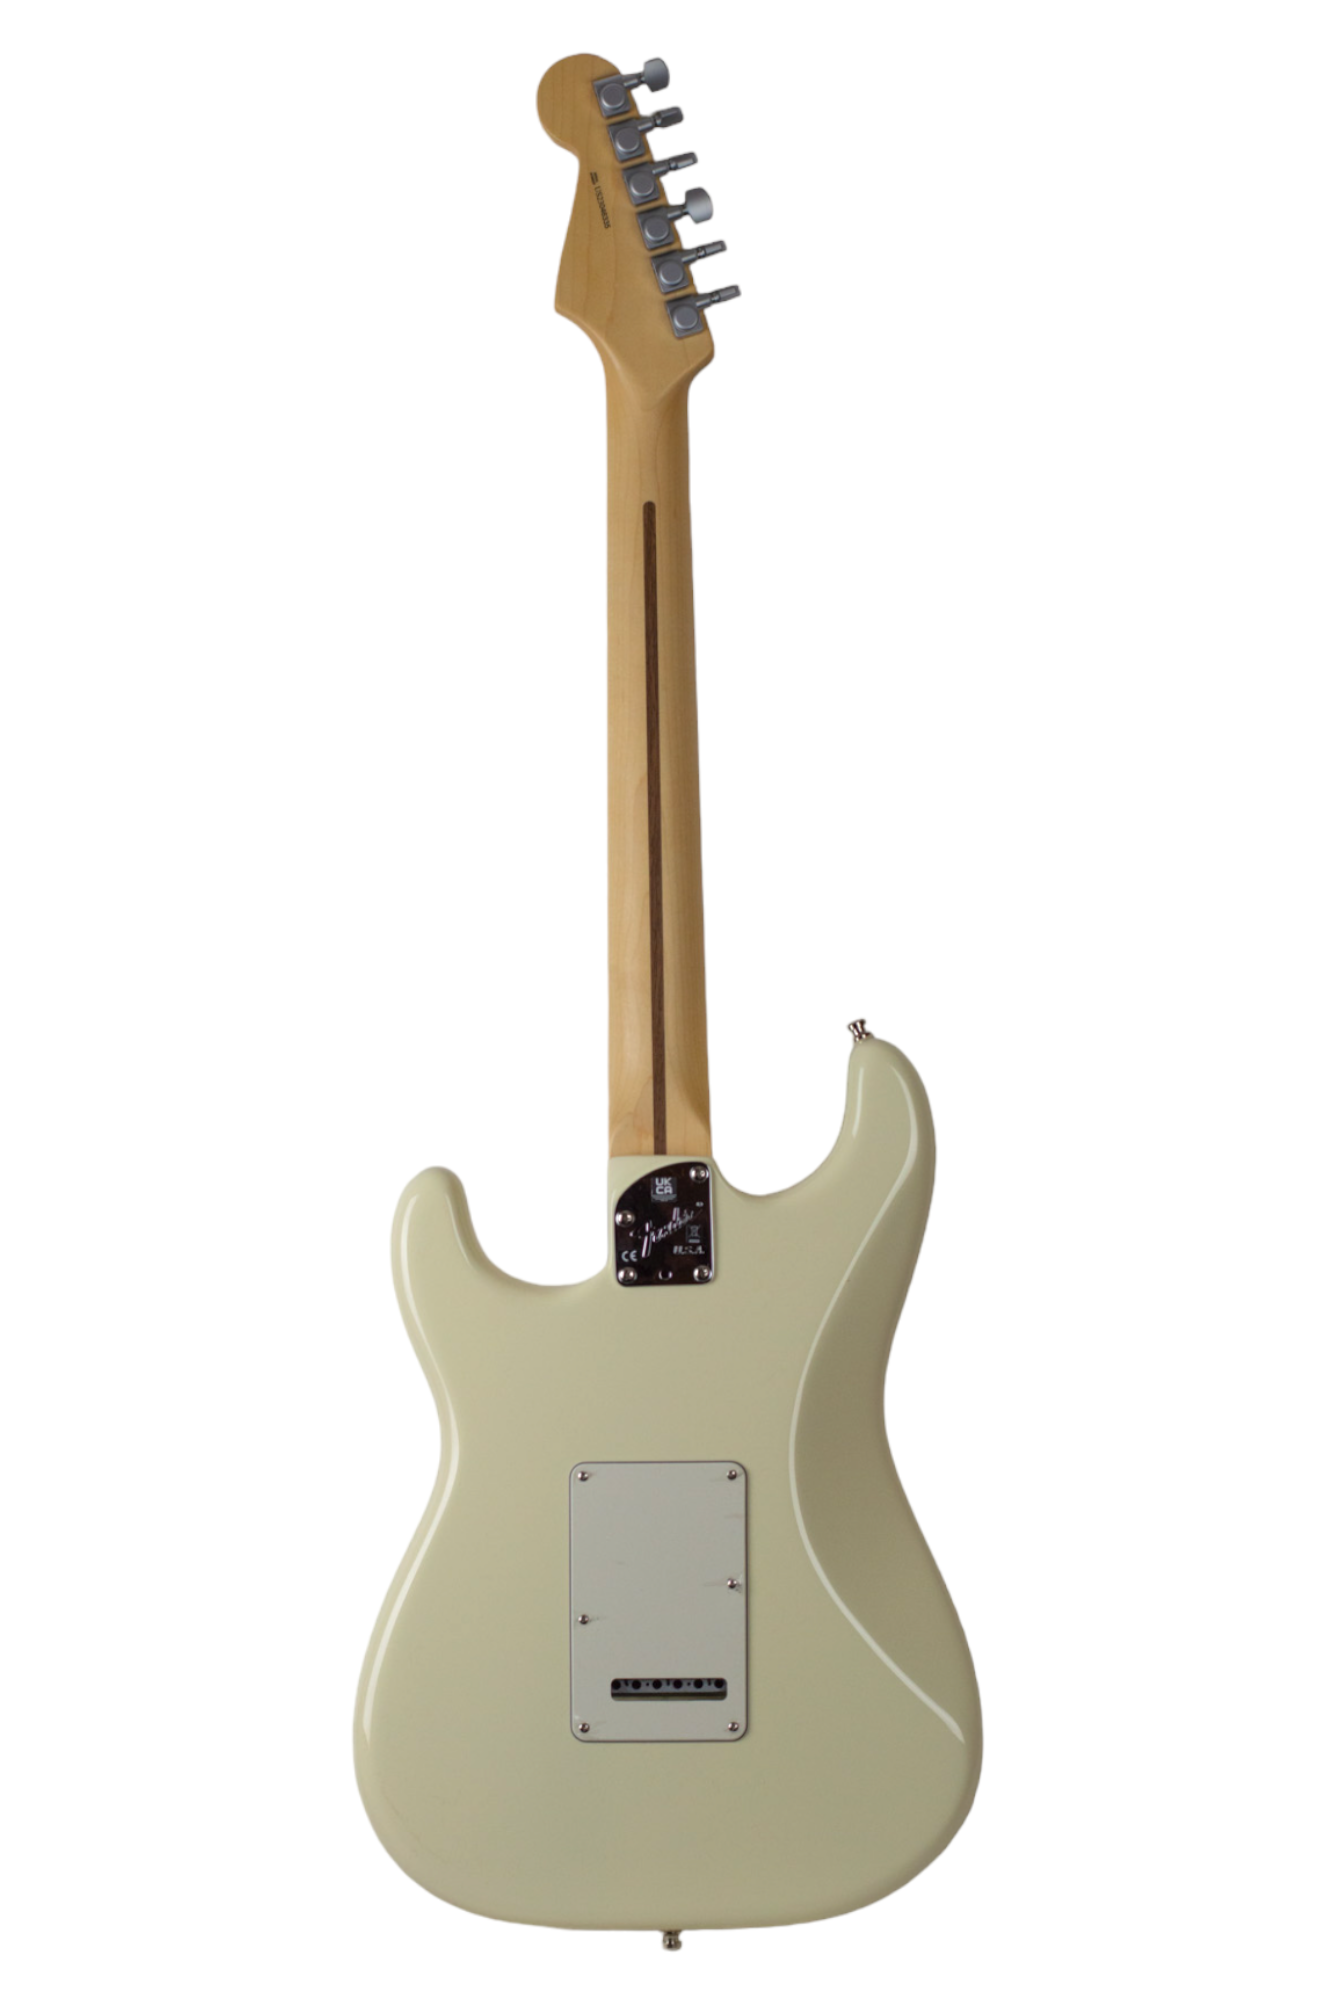 Thunder Road Guitars - New Fender USA Jeff Beck Stratocaster 